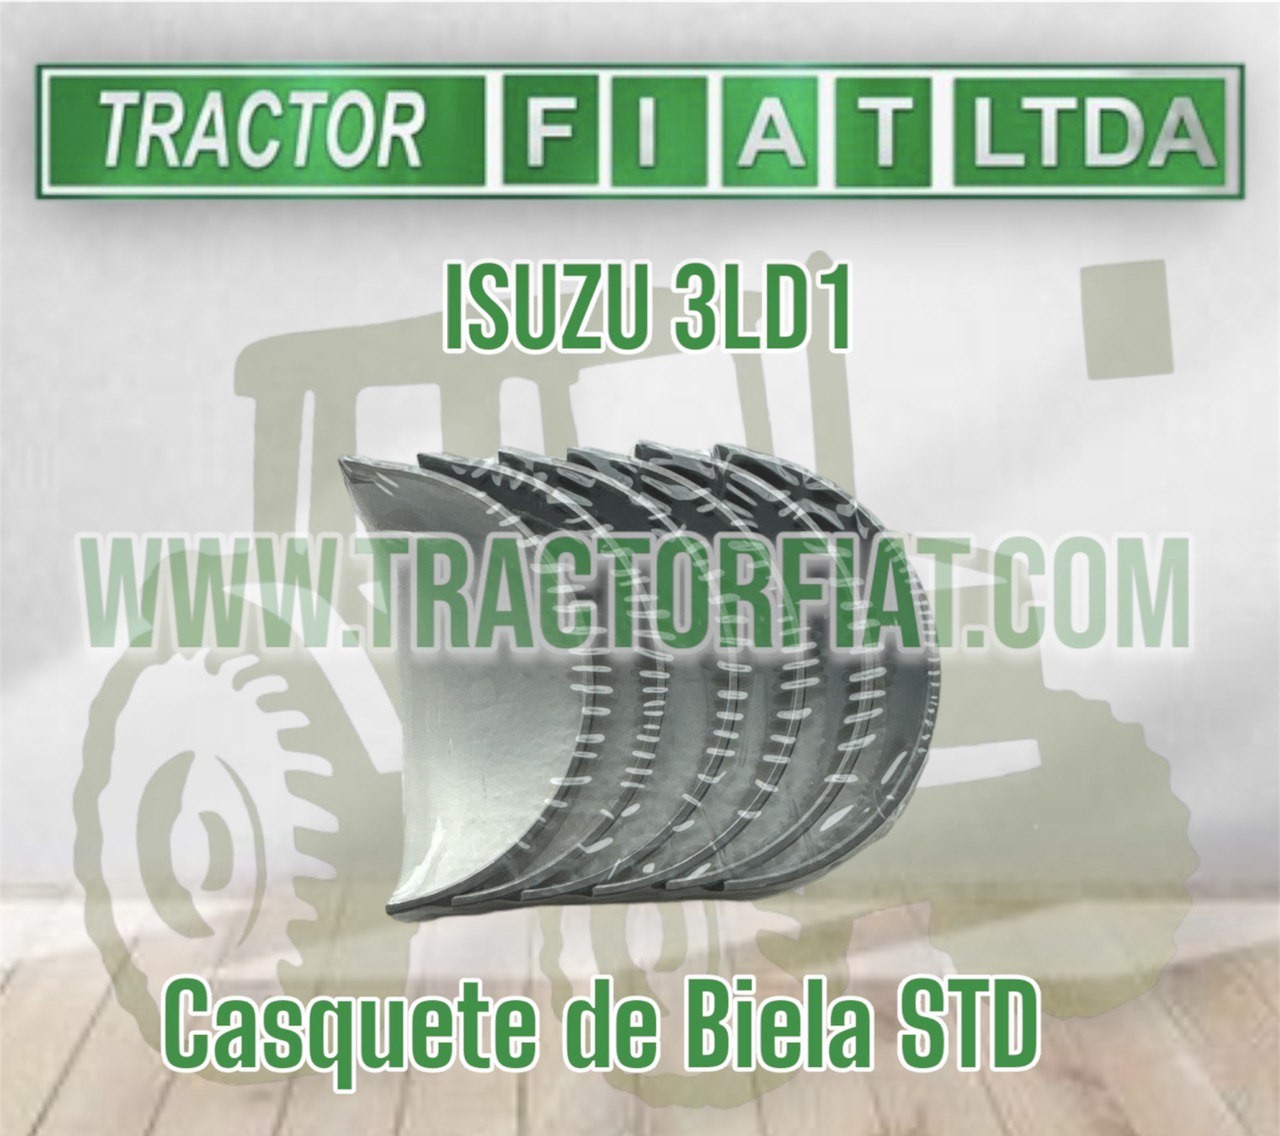 CASQUETES BIELA STD -MOTOR ISUZU 3LD1